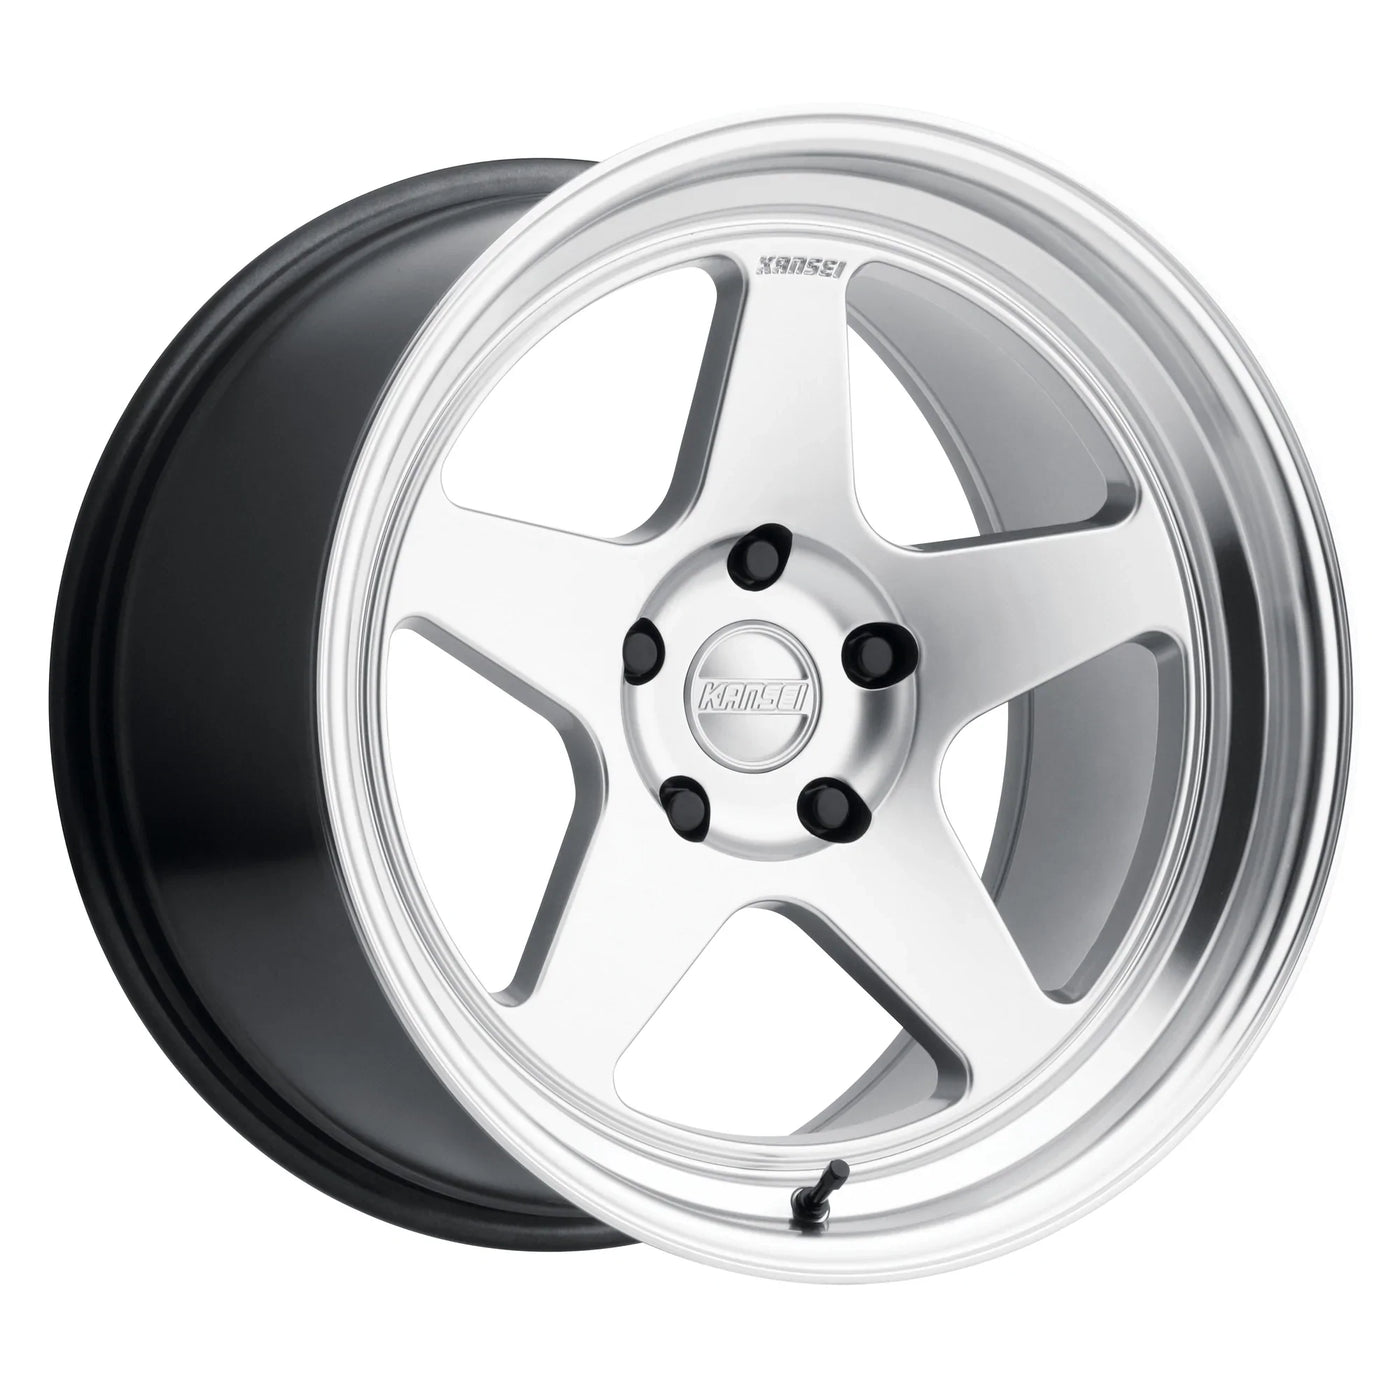 Kansei KNP Wheels 18X9 5X114.3 +12 - Silver